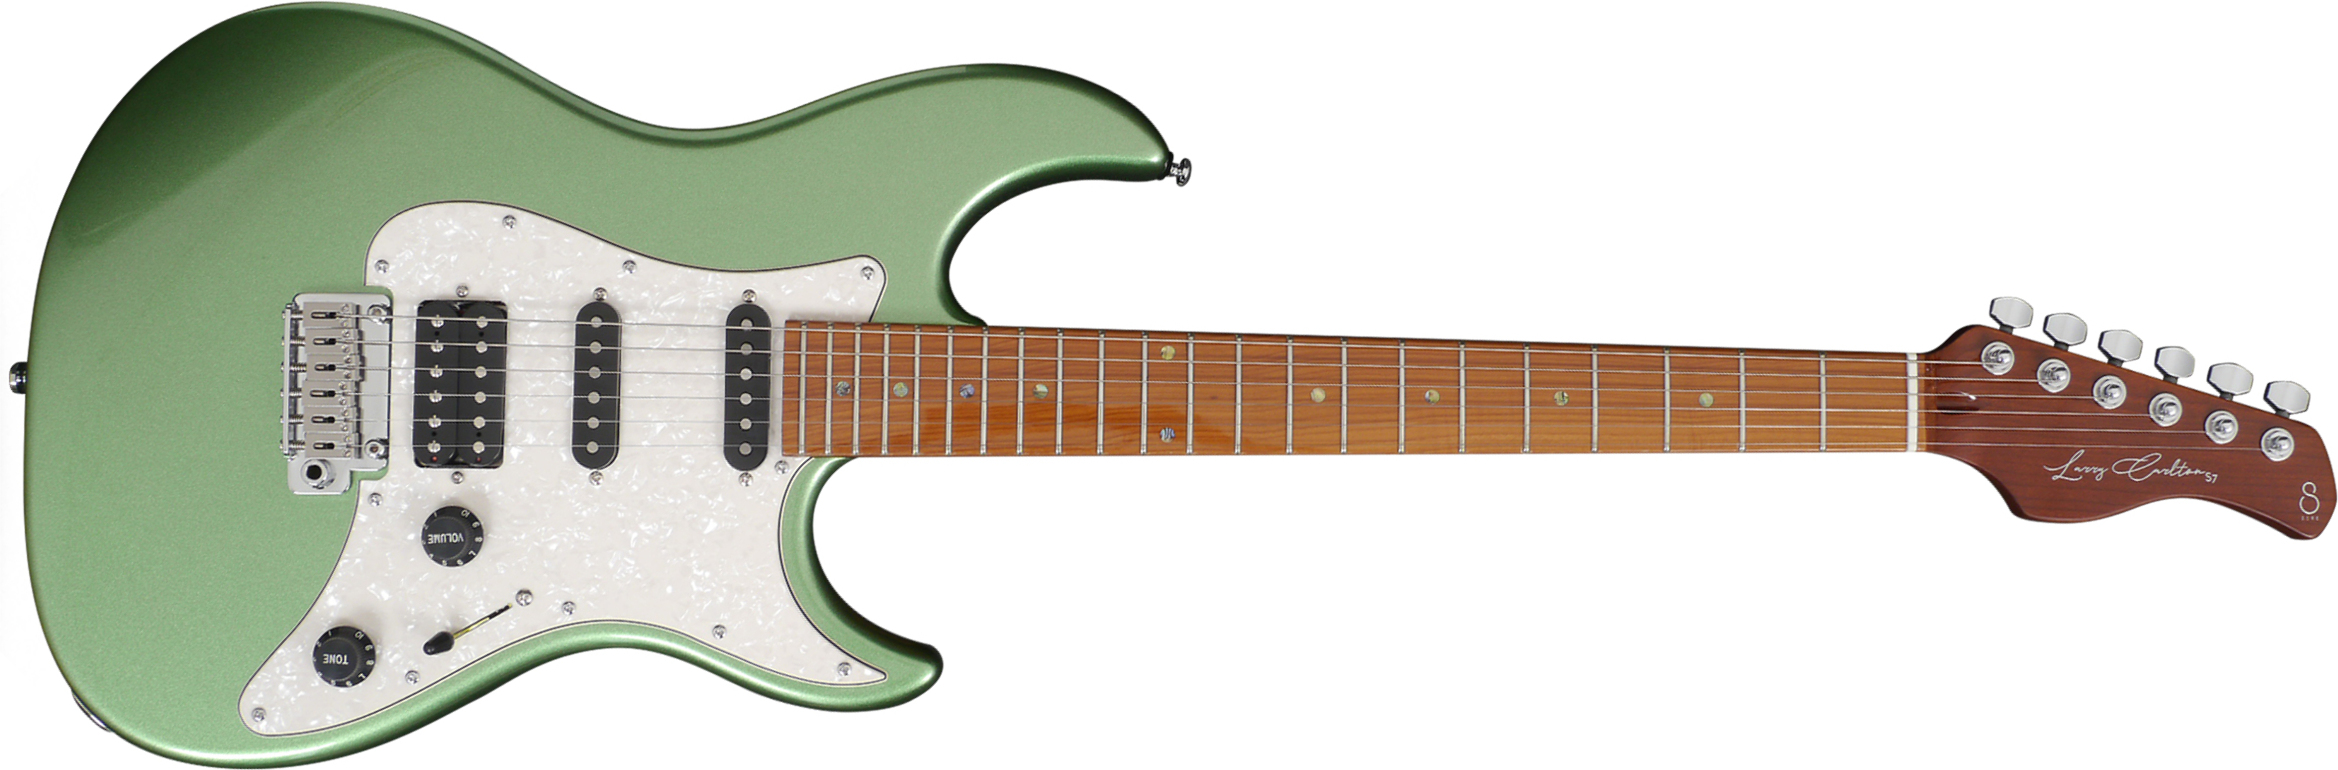 Sire Larry Carlton S7 Signature Hss Trem Eb - Seafoam Green - E-Gitarre in Str-Form - Main picture